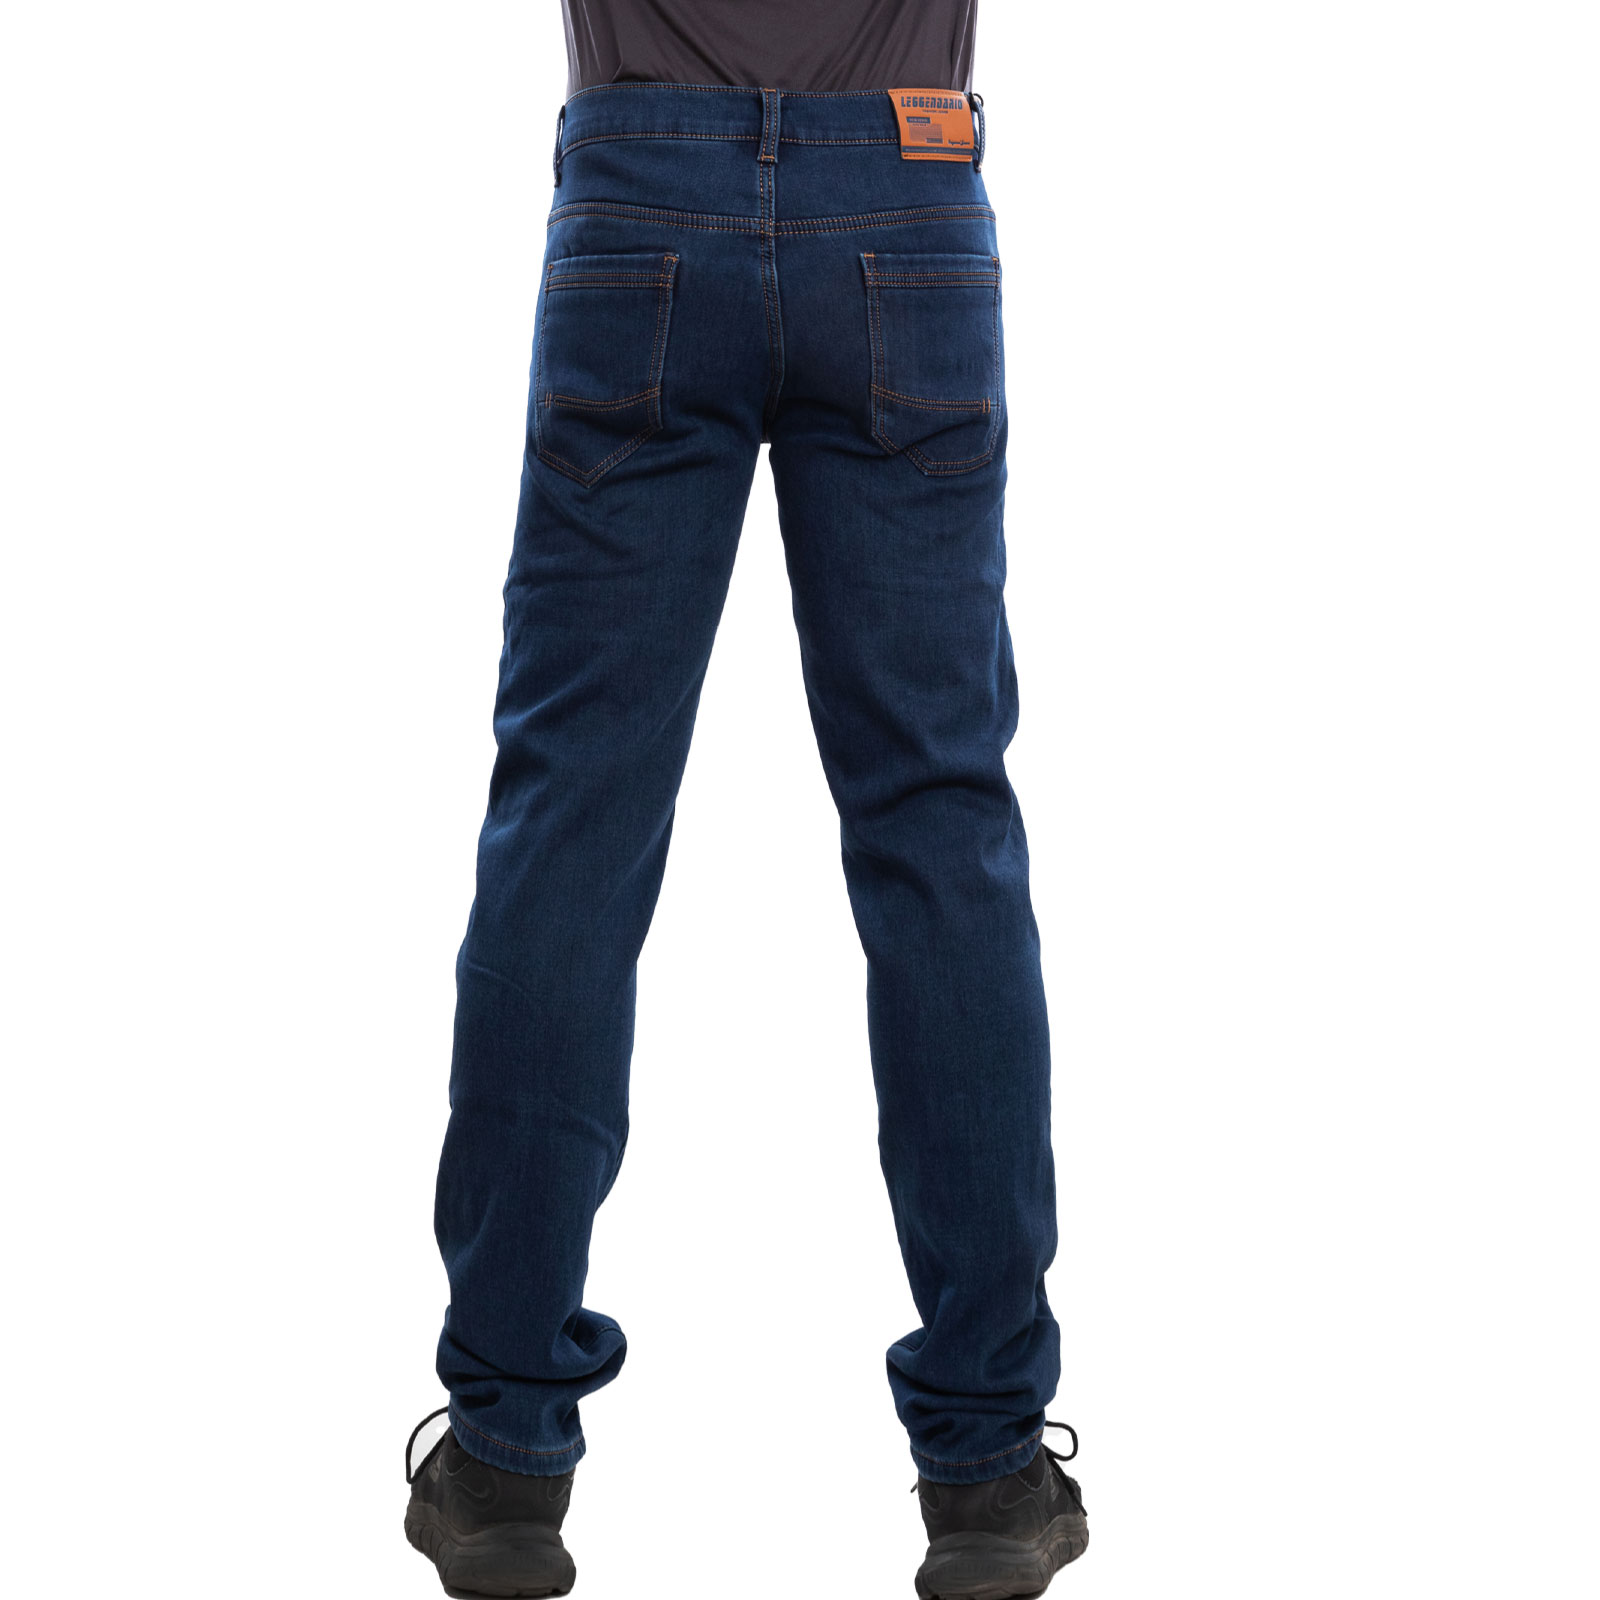 Jeans A Gamba AffusolataDSquared² in Denim da Uomo colore Nero Uomo Abbigliamento da Jeans da Jeans attillati 73% di sconto 